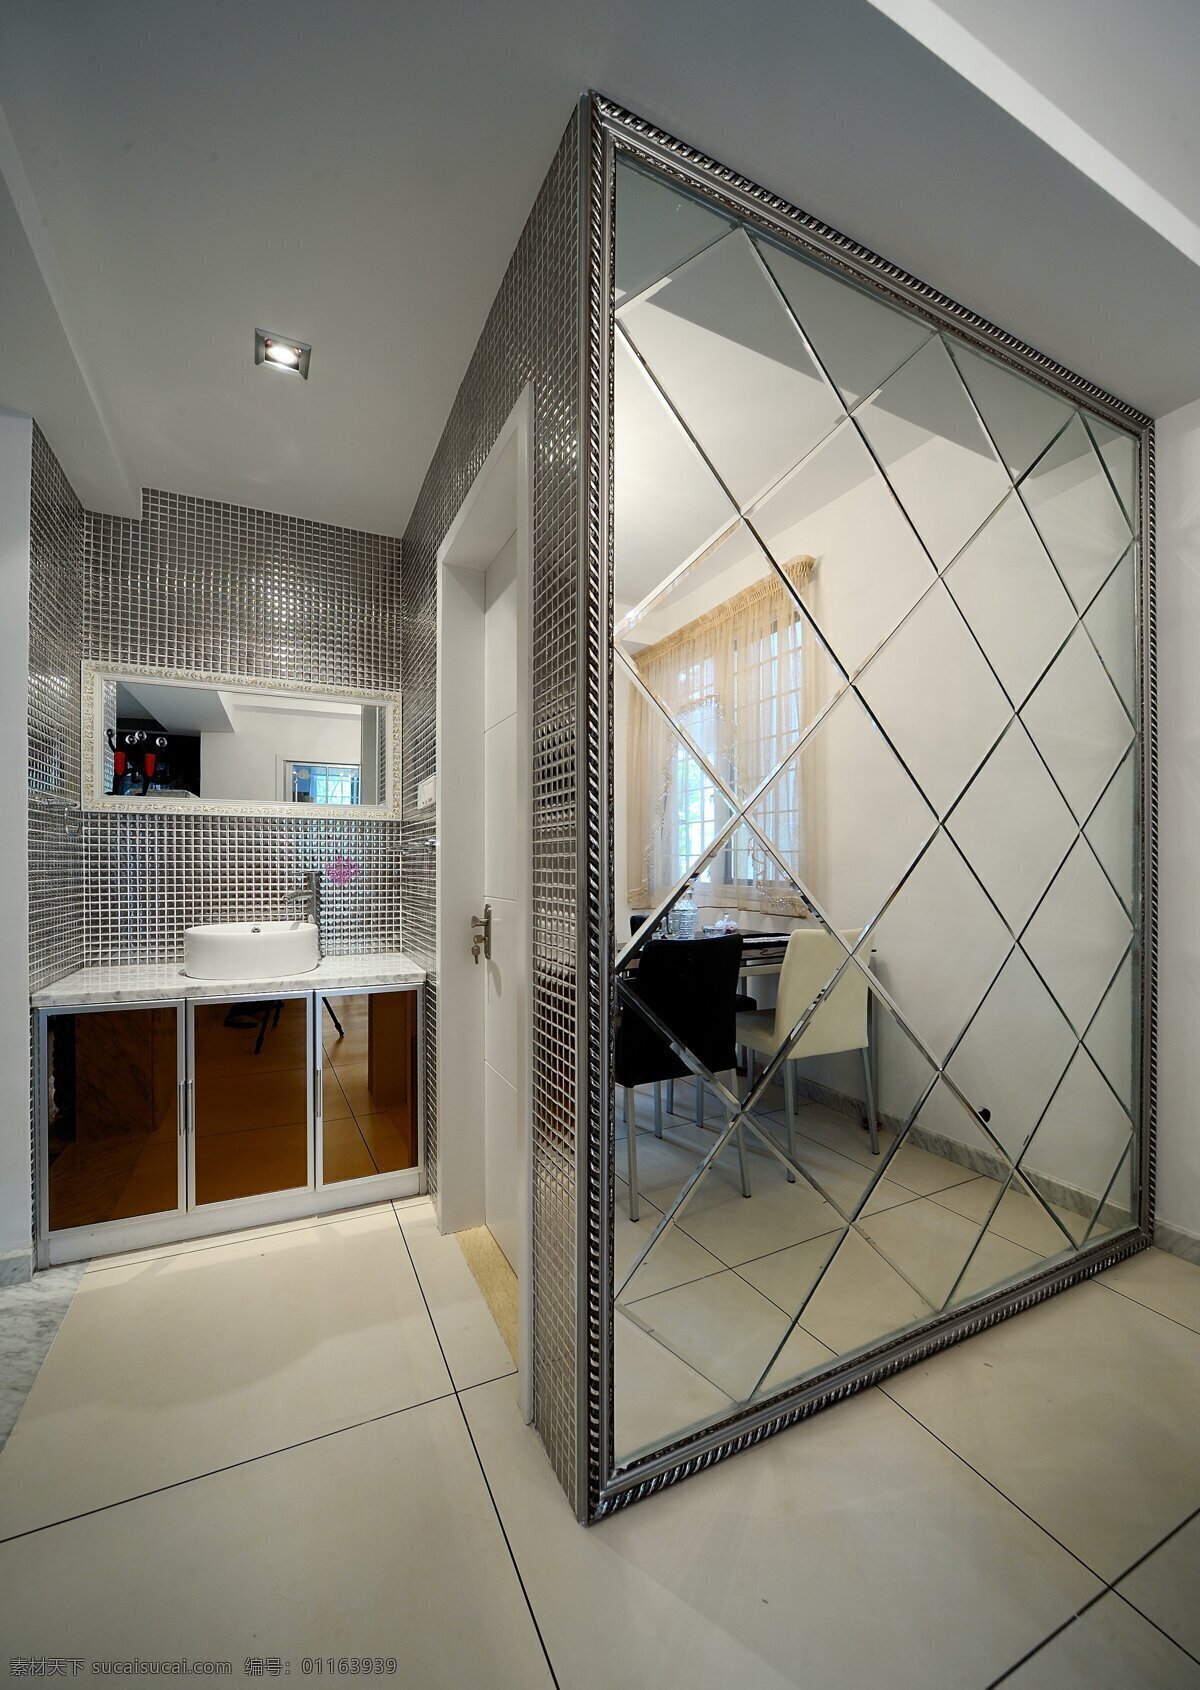 简约 风 室内设计 洗手间 镜子 效果图 现代 厨房 料理台 抽油烟机 壁柜 家装